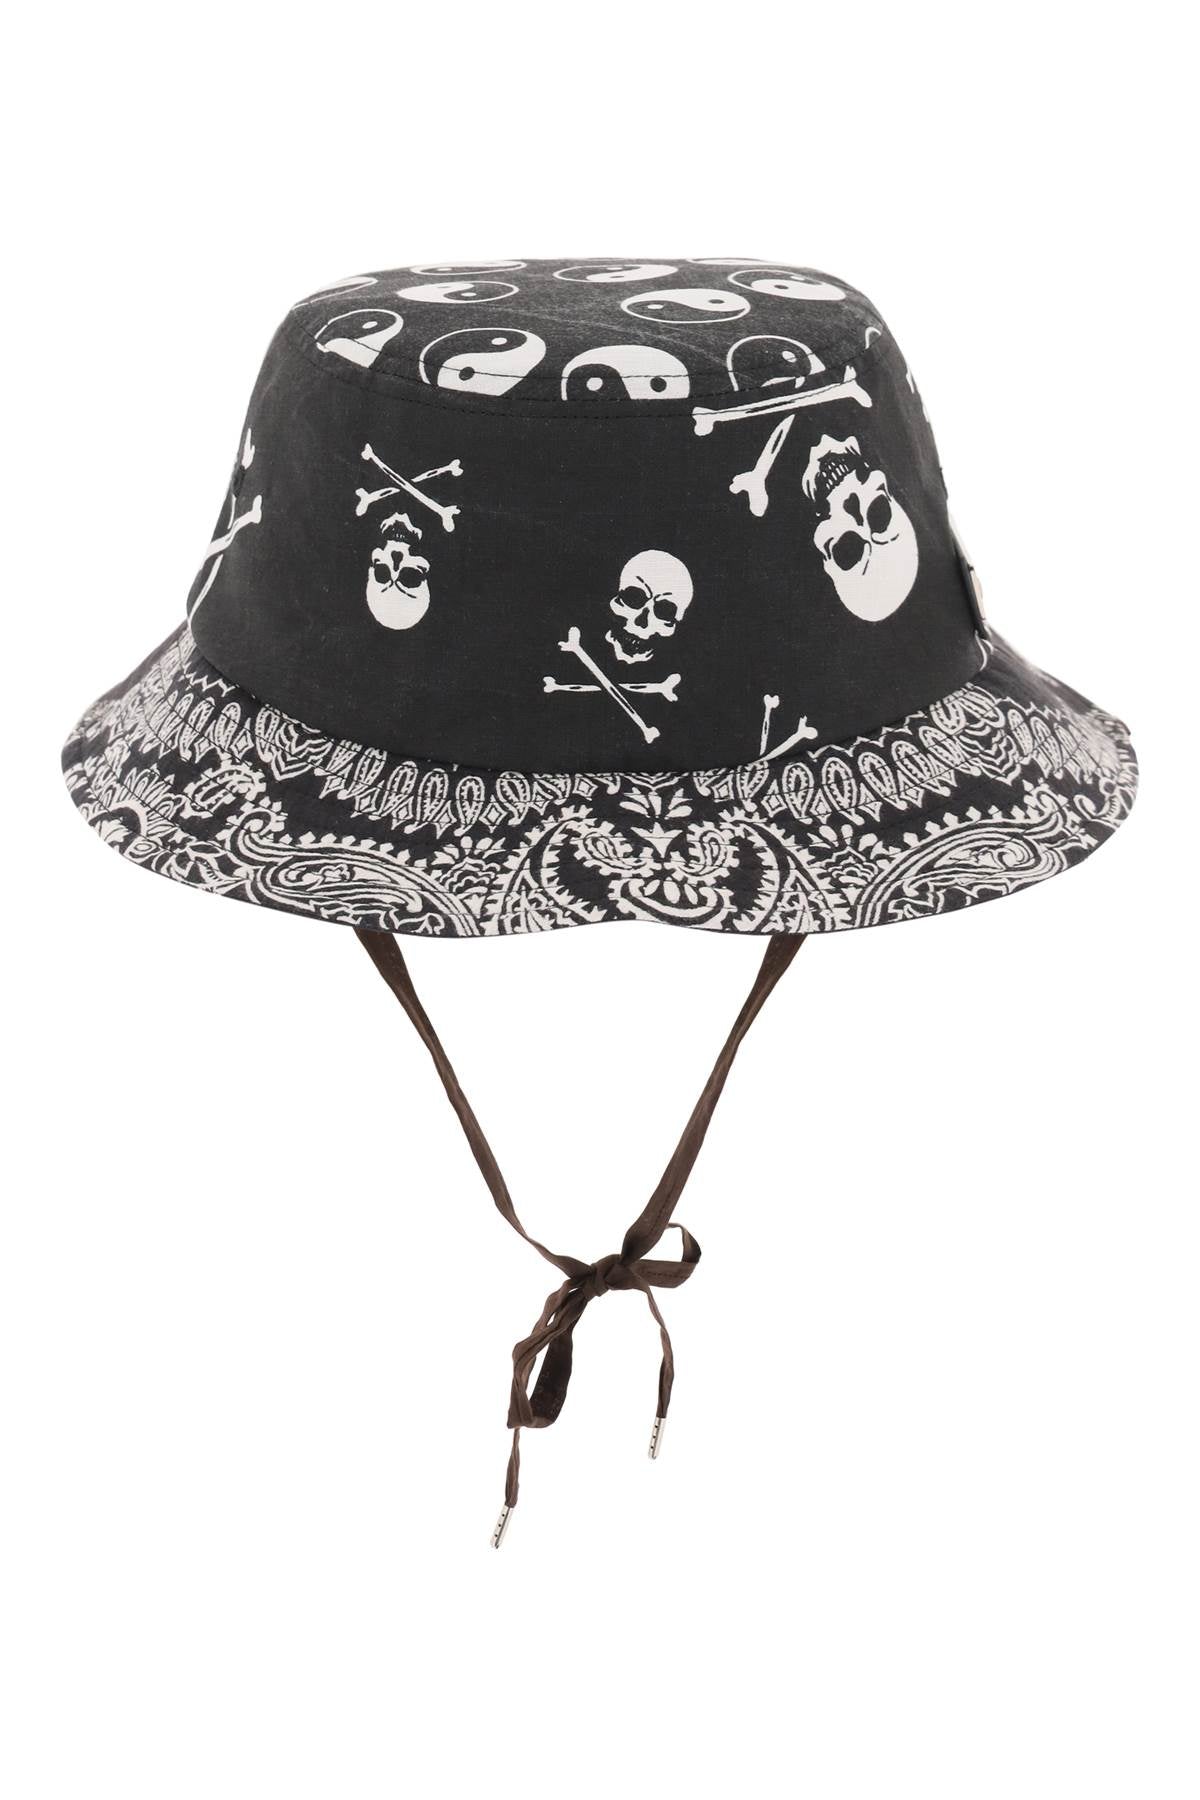 不和諧的兒童頭巾桶帽 COTDAC 827B 黑色